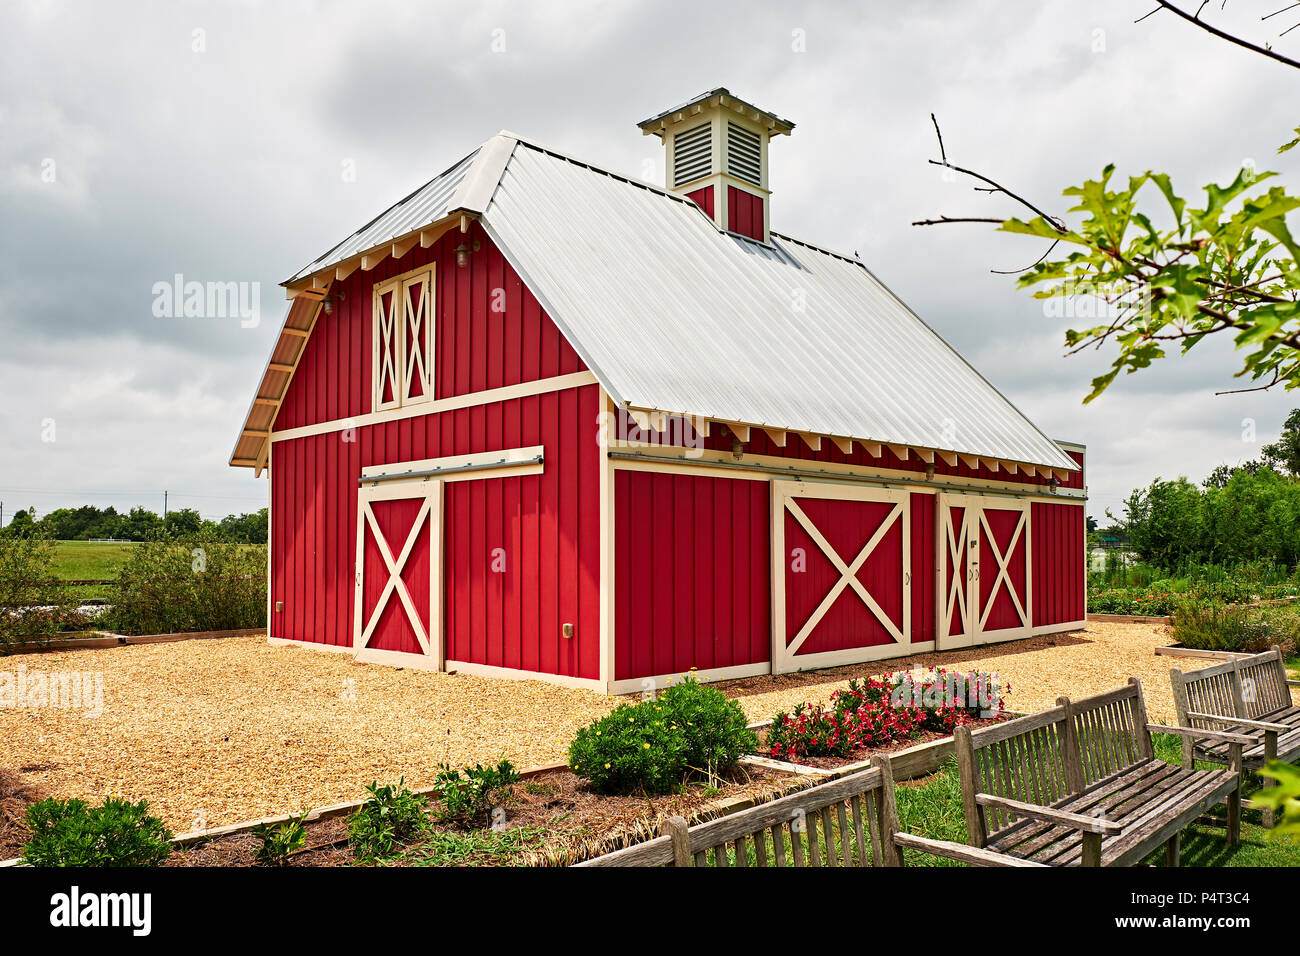 Granero rojo pequeño encontrado en una granja o rancho rural principalmente utilizado para el almacenamiento en los Estados Unidos. Foto de stock